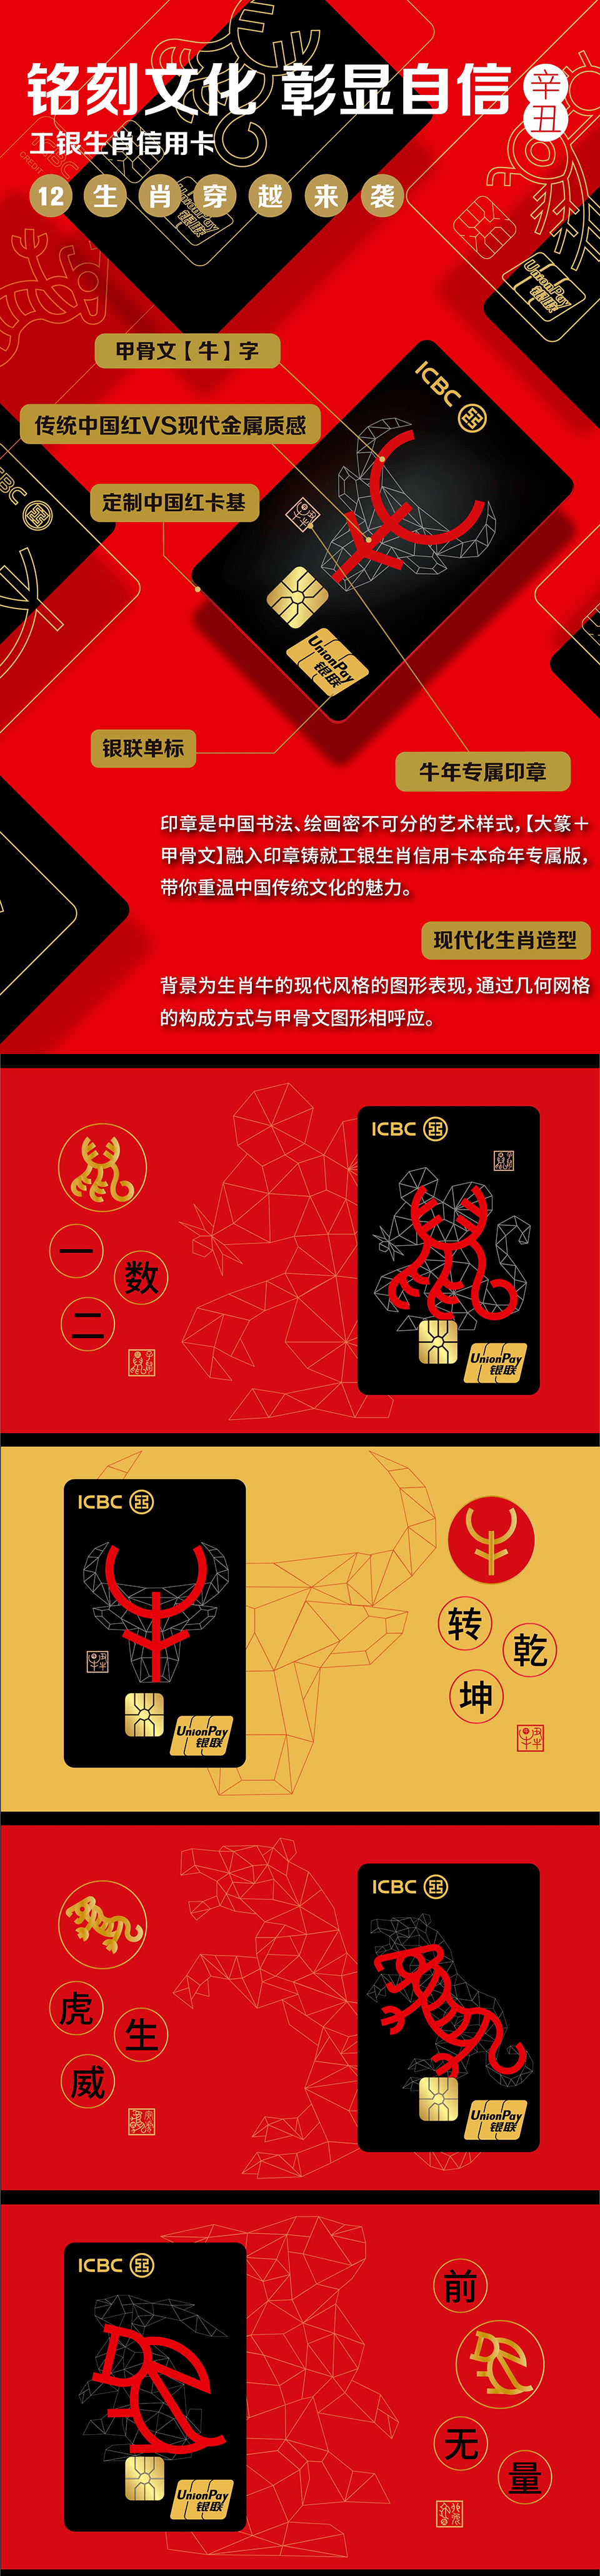 图文内容已经中国工商银行信用卡(id:icbccards)授权发布 点击"在看"